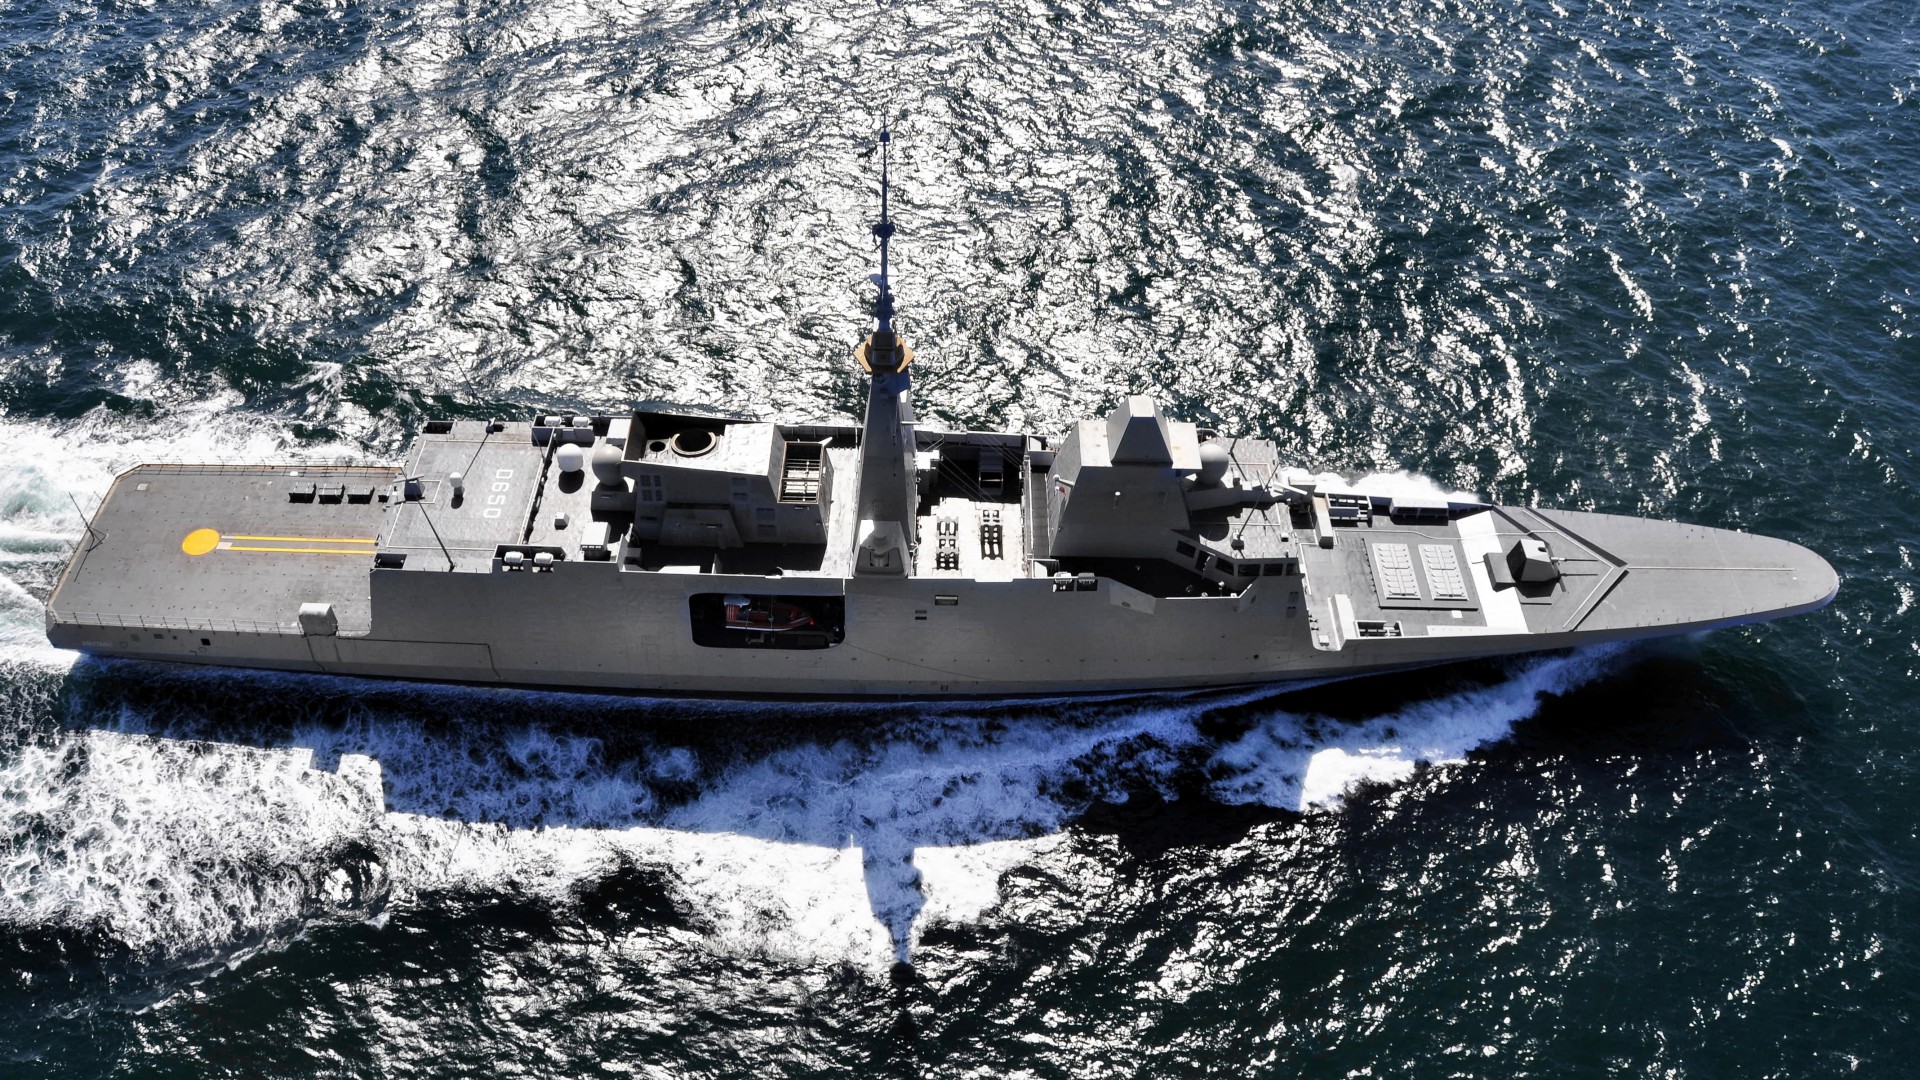 FREMM multipurpose frigate, French Navy, French Army (horizontal)